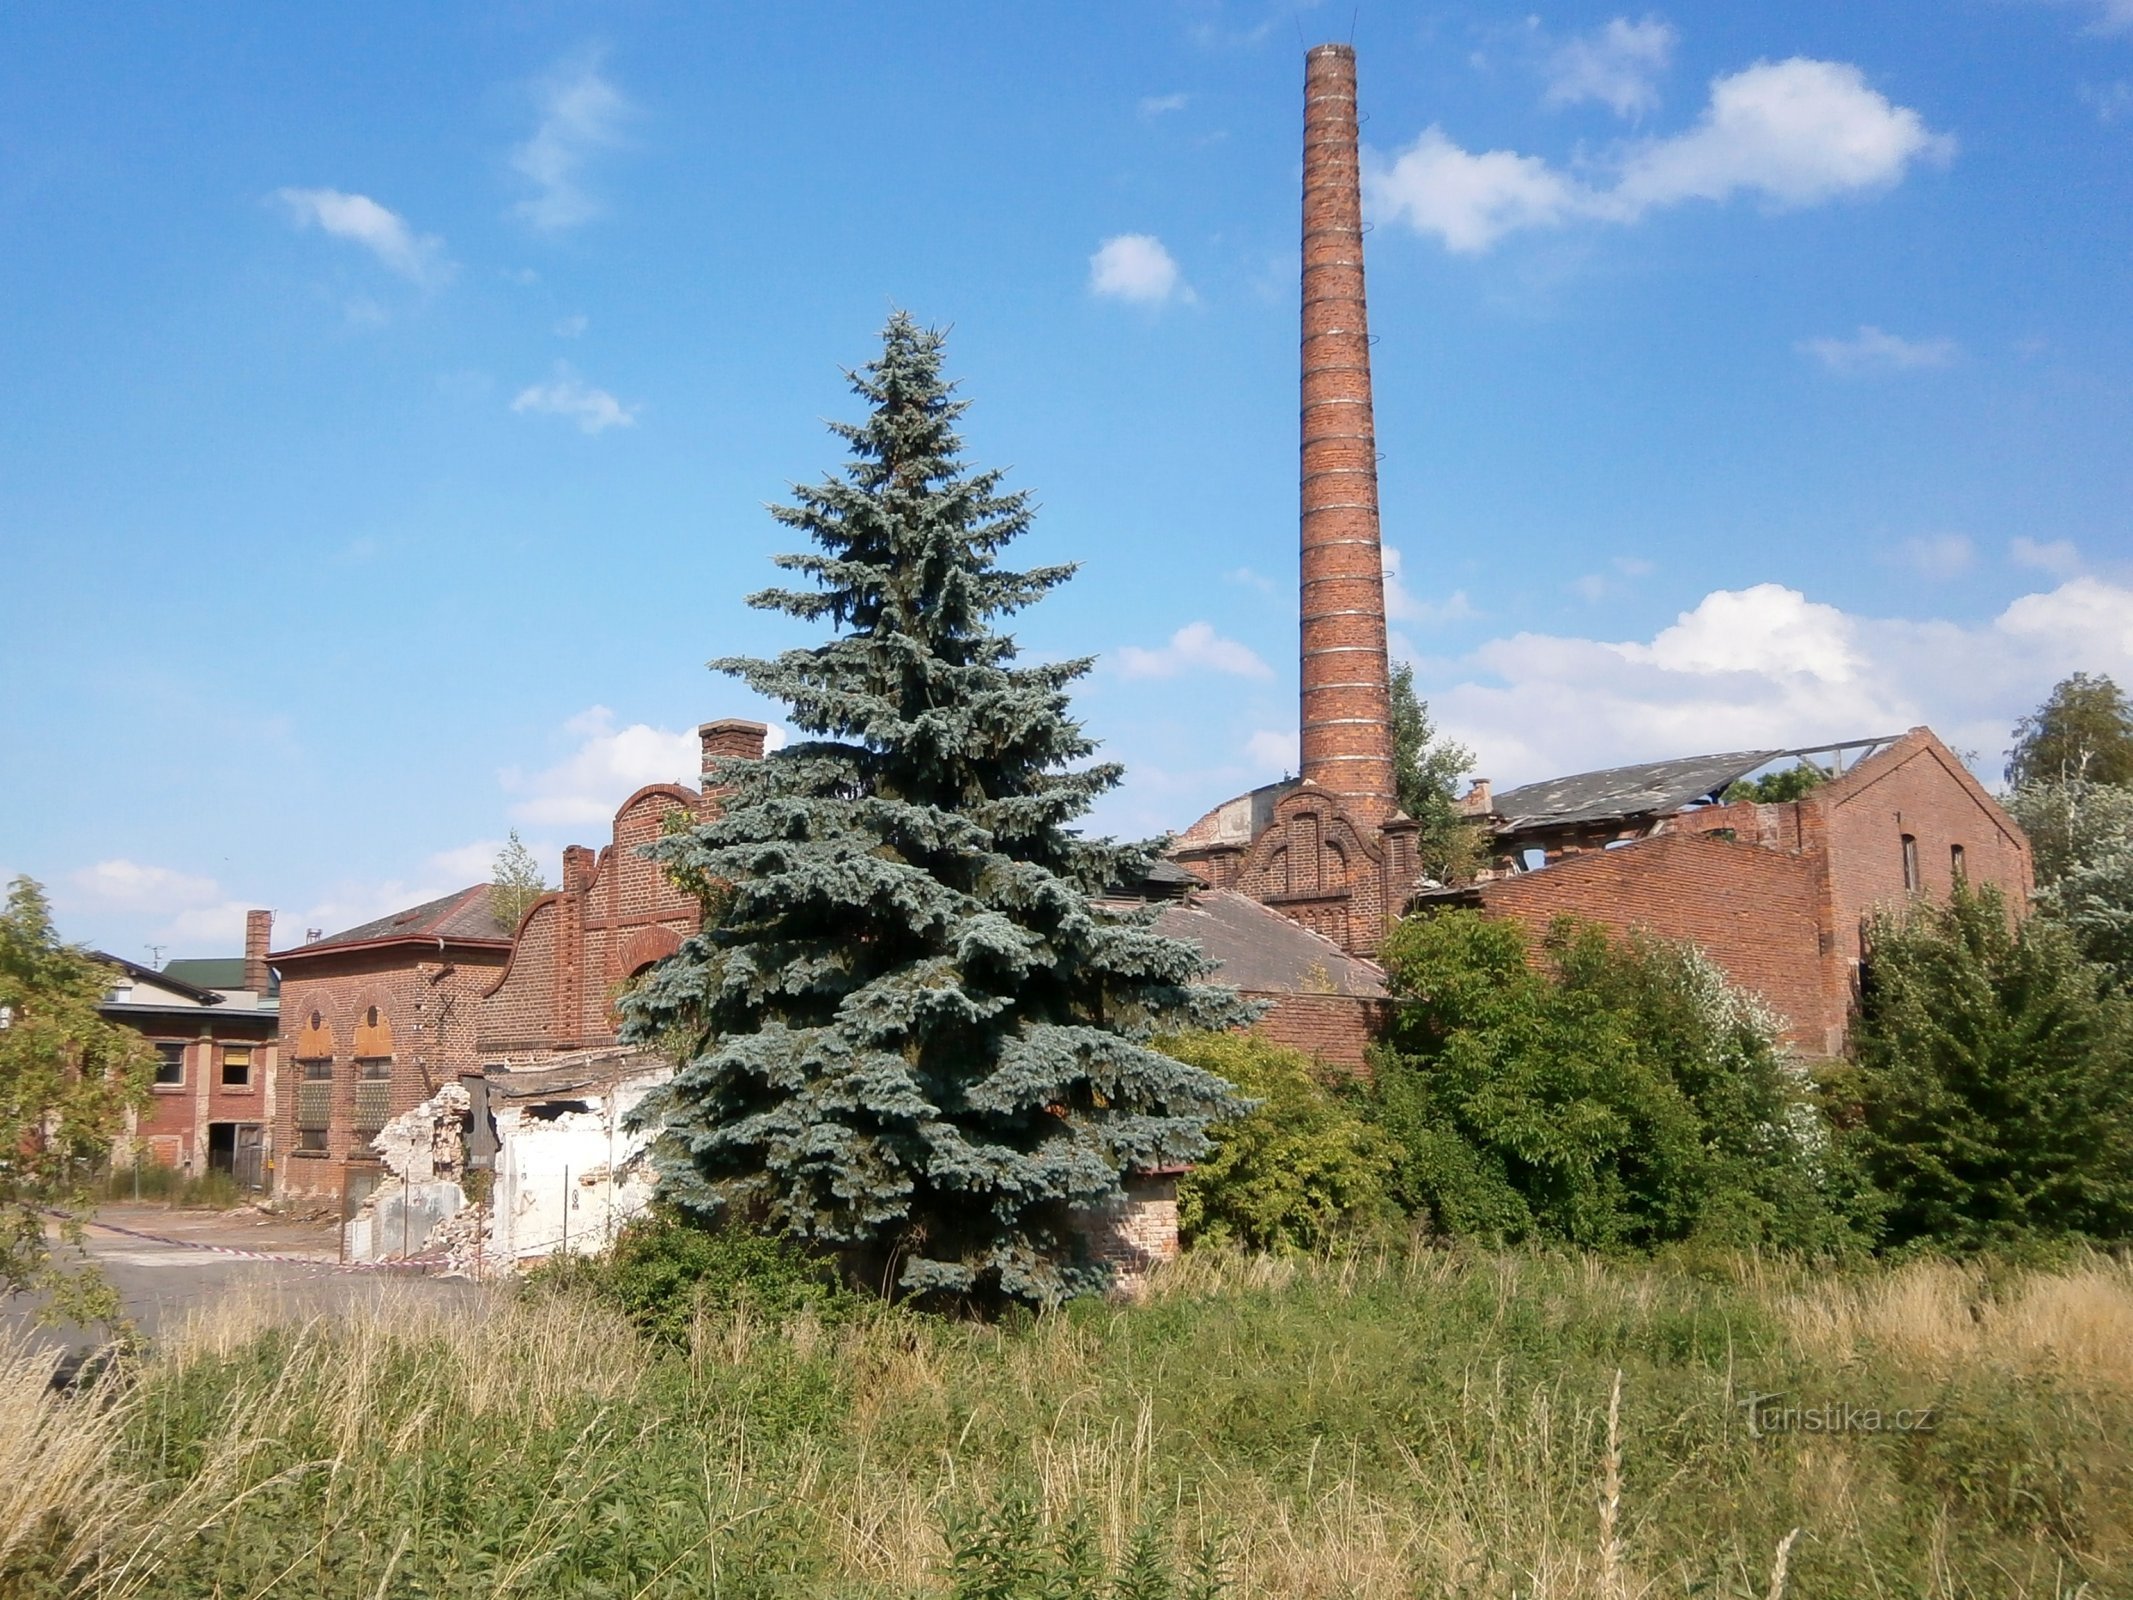 Xưởng thuộc da ở Kukleny trước khi bị phá dỡ (Hradec Králové, 19.6.2014)